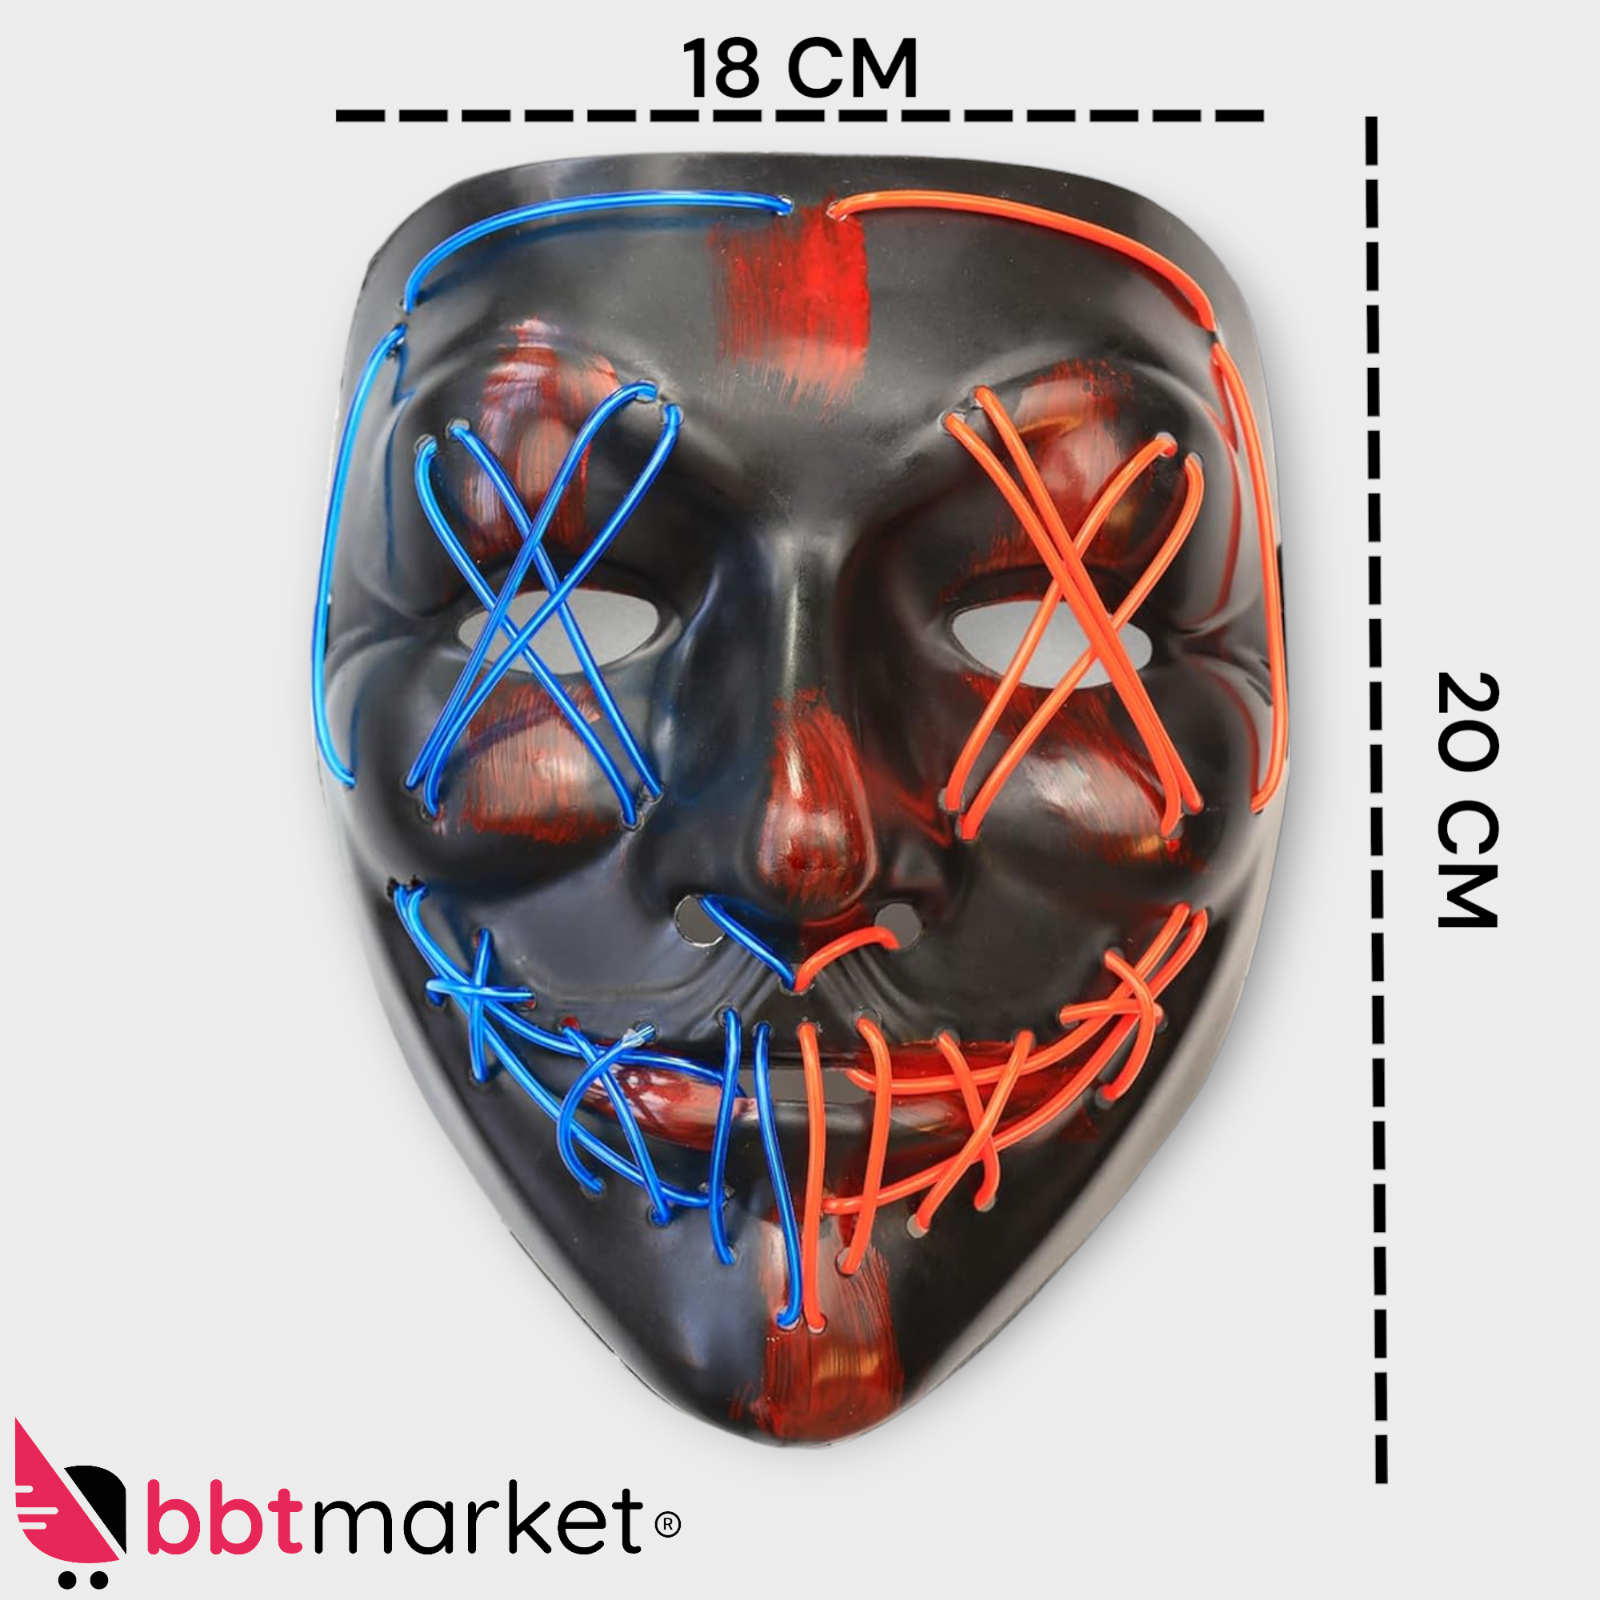 NEU LED Purge Maske als Kostüm Halloween mit Lichteffekten Helloween Zombi Party